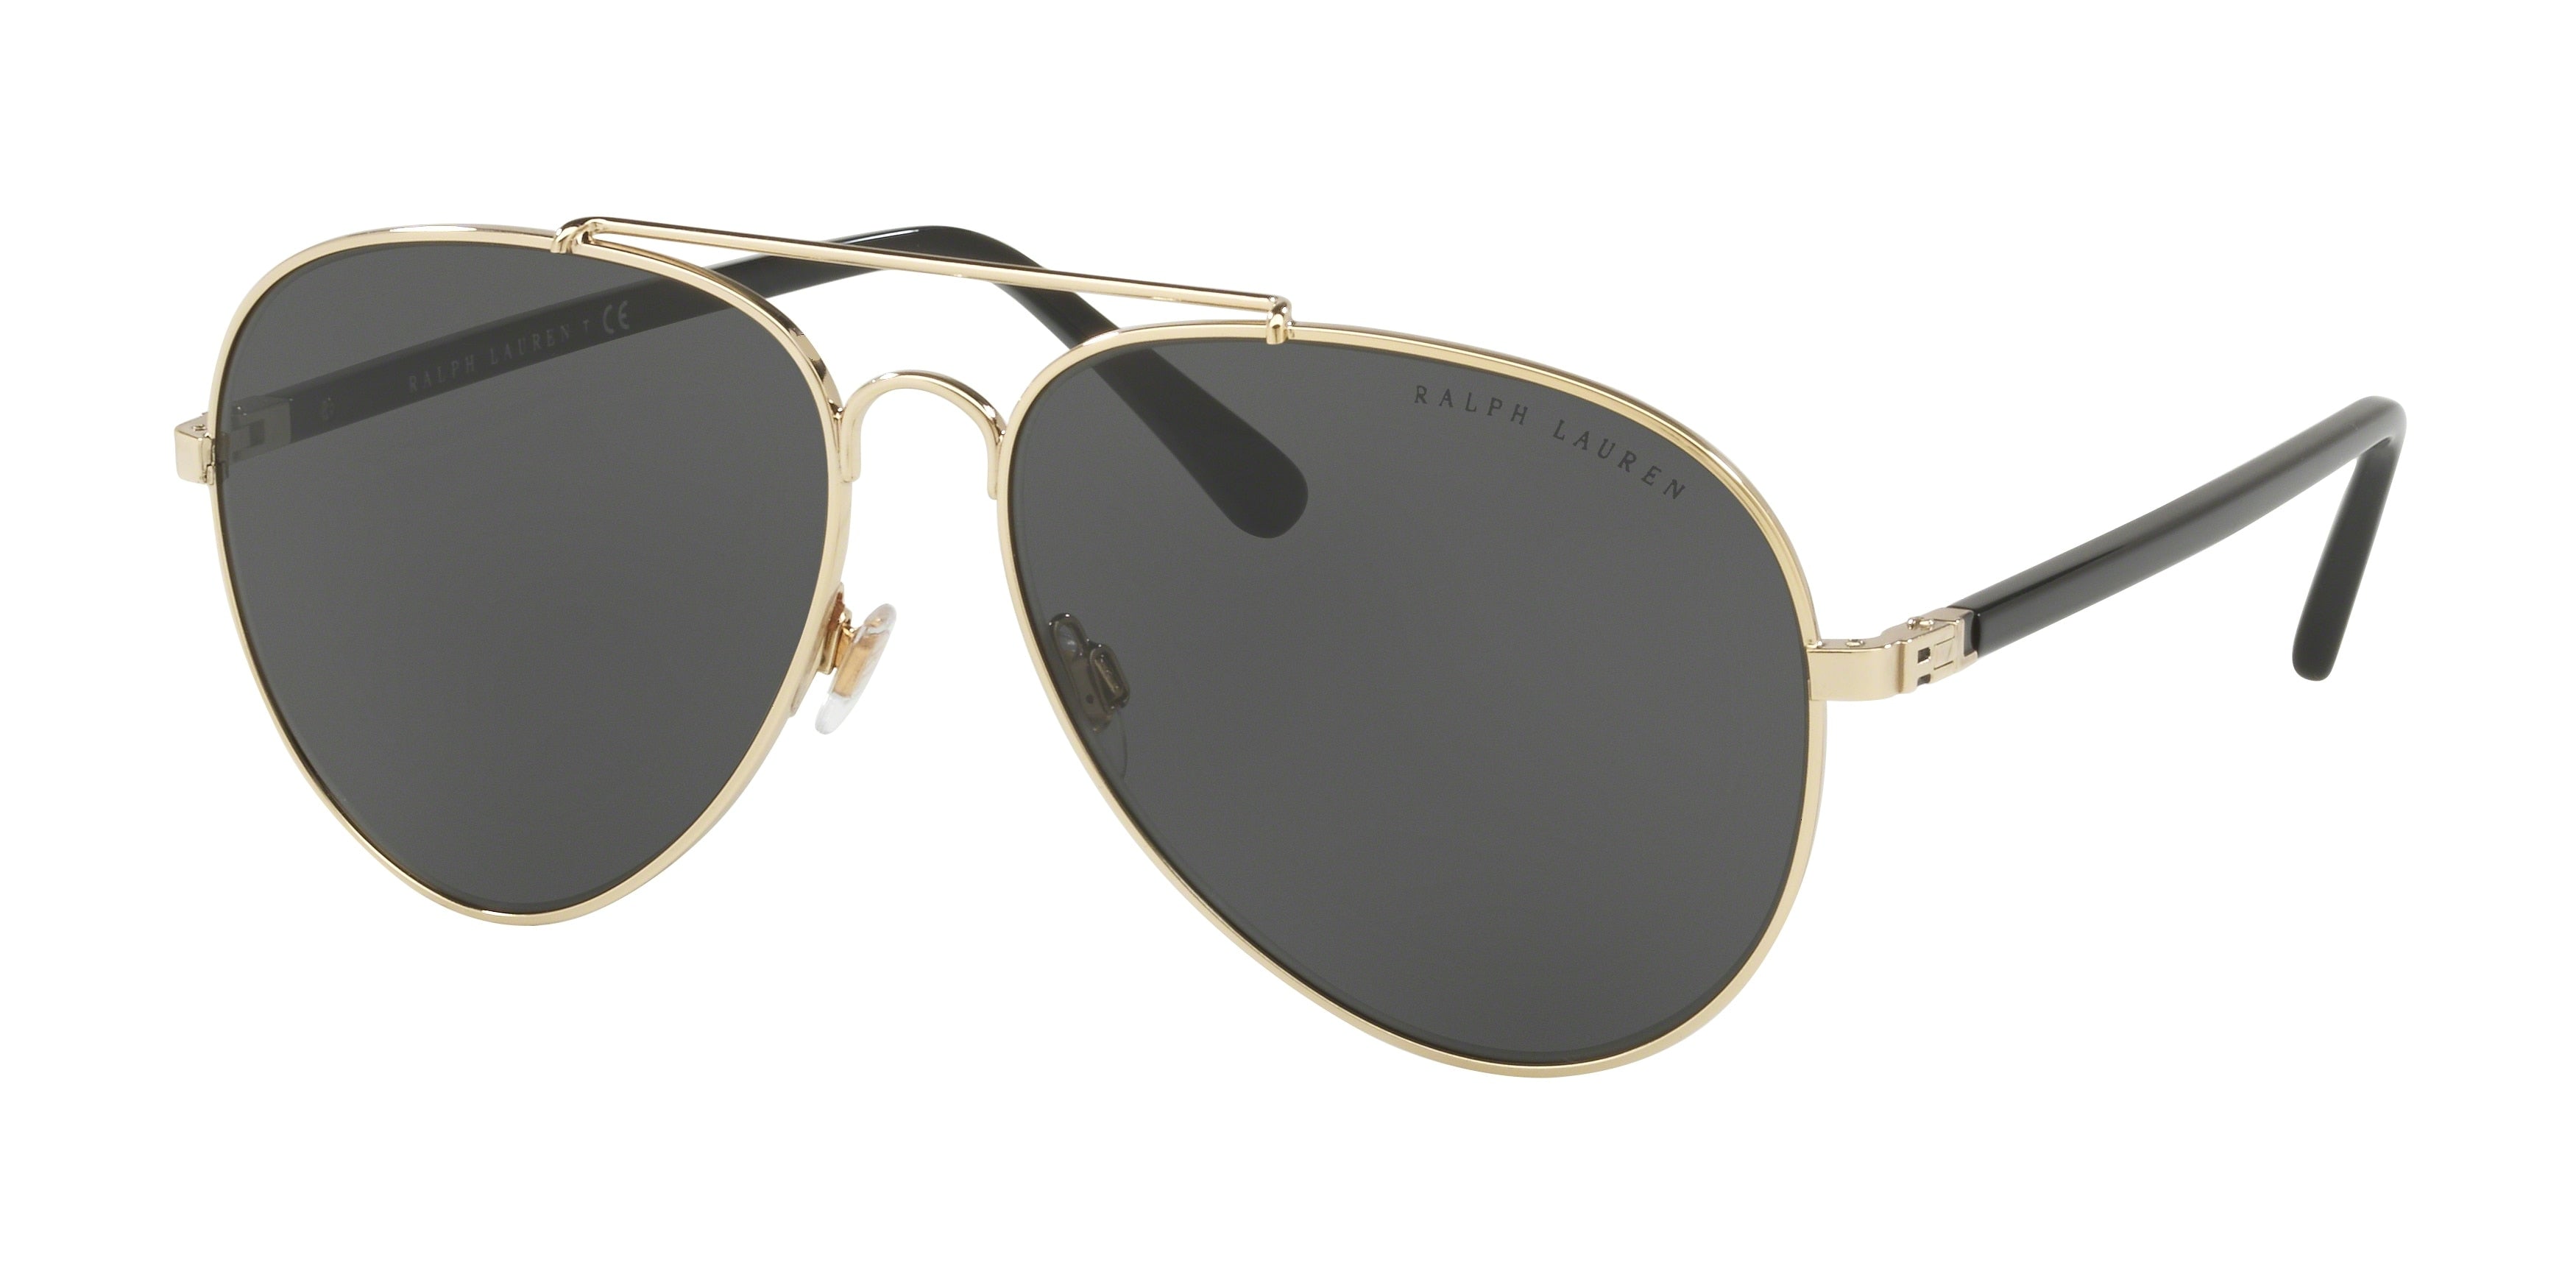 Ralph Lauren RL7058 Pilot Sunglasses  911687-Shiny Pale Gold 62-145-14 - Color Map Gold